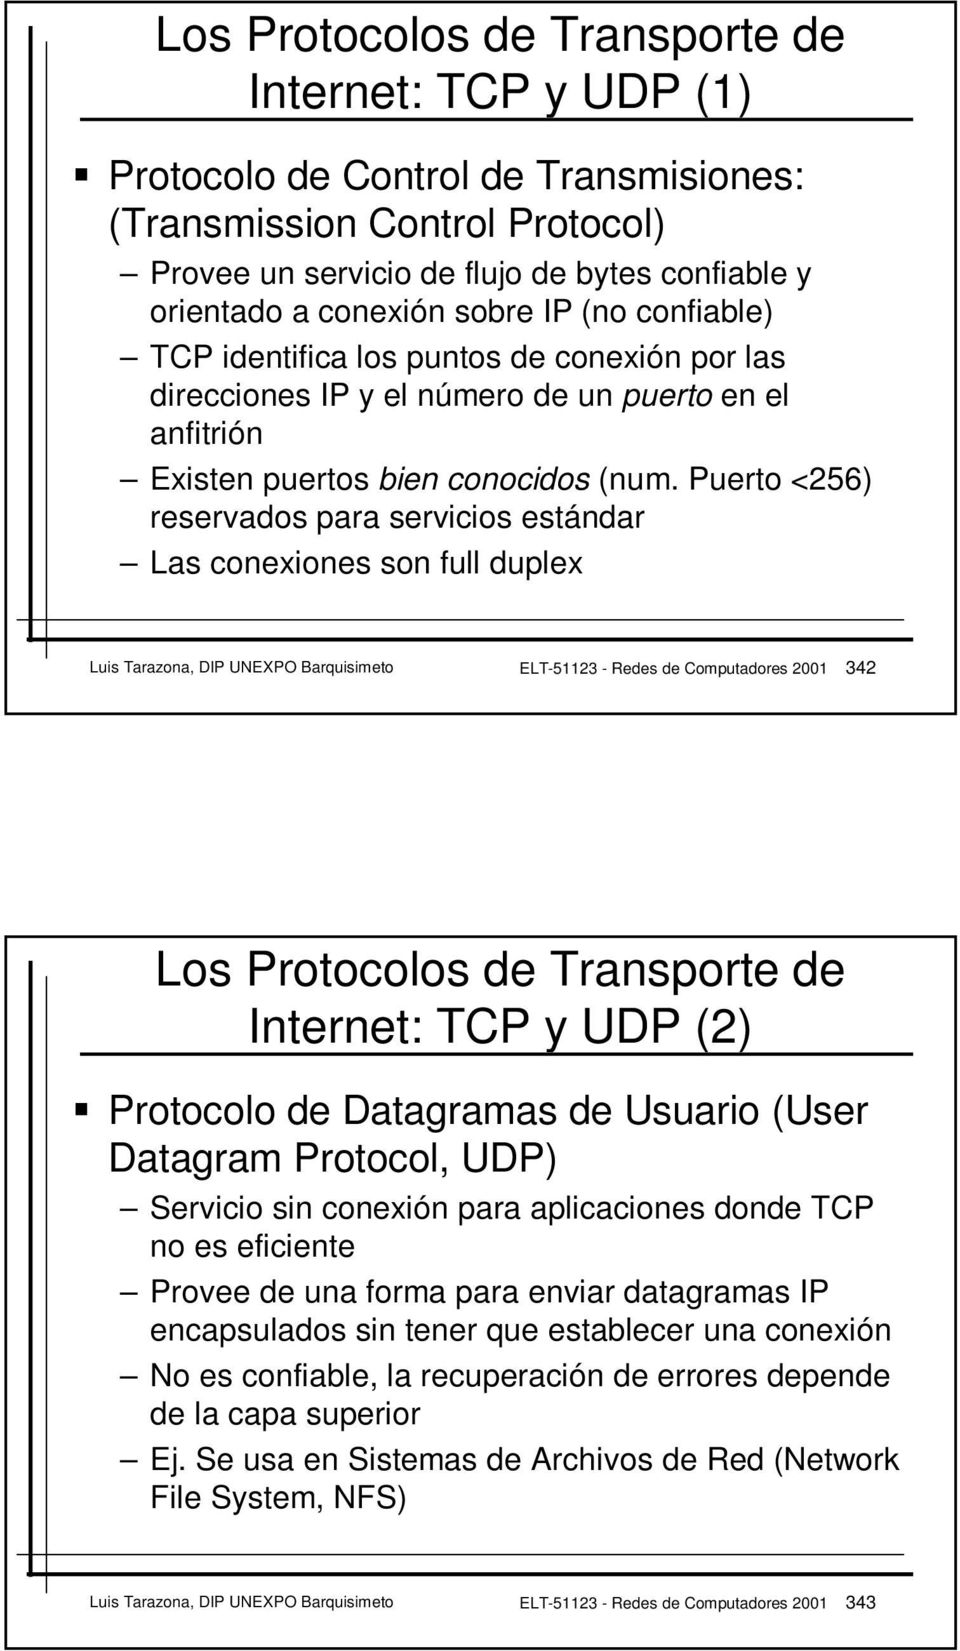 Puerto <256) reservados para servicios estándar Las conexiones son full duplex Luis Tarazona, DIP UNEXPO Barquisimeto ELT-51123 - Redes de Computadores 2001 342 Los Protocolos de Transporte de